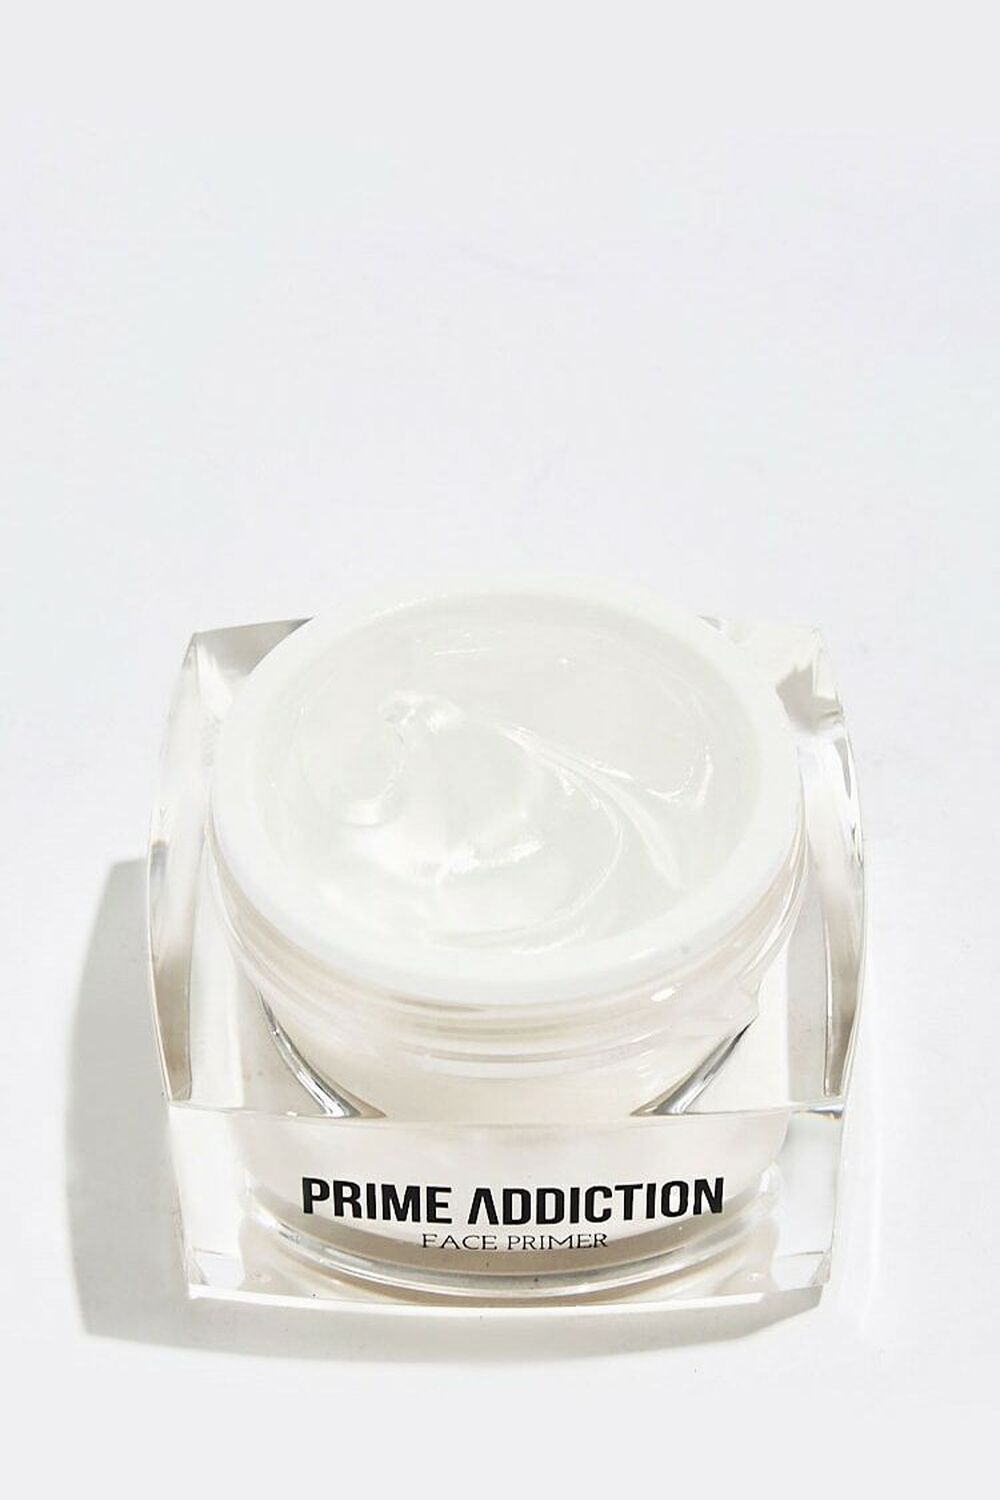 Frankie Rose Prime Addiction Face Primer, image 2